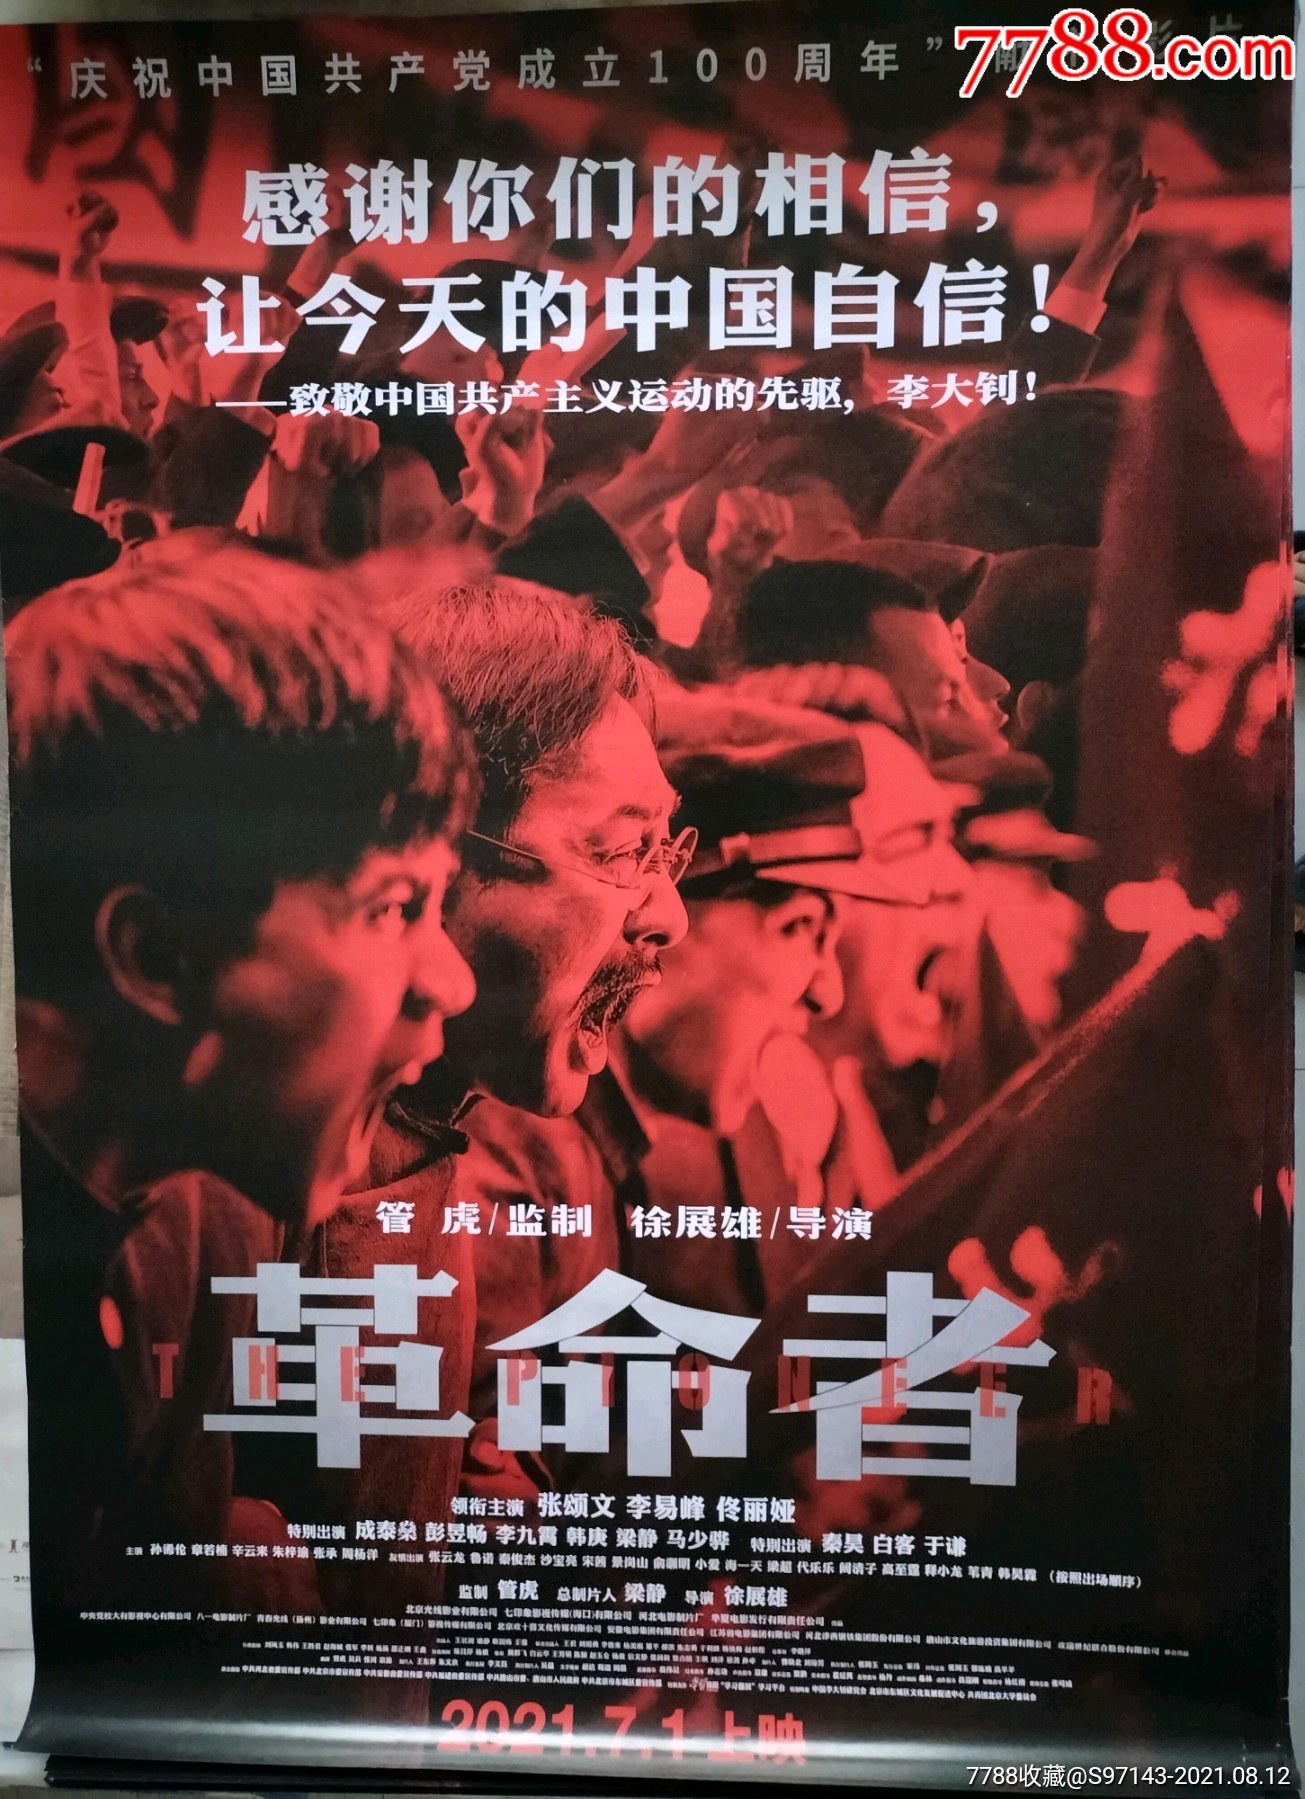 一开电影海报:革命者